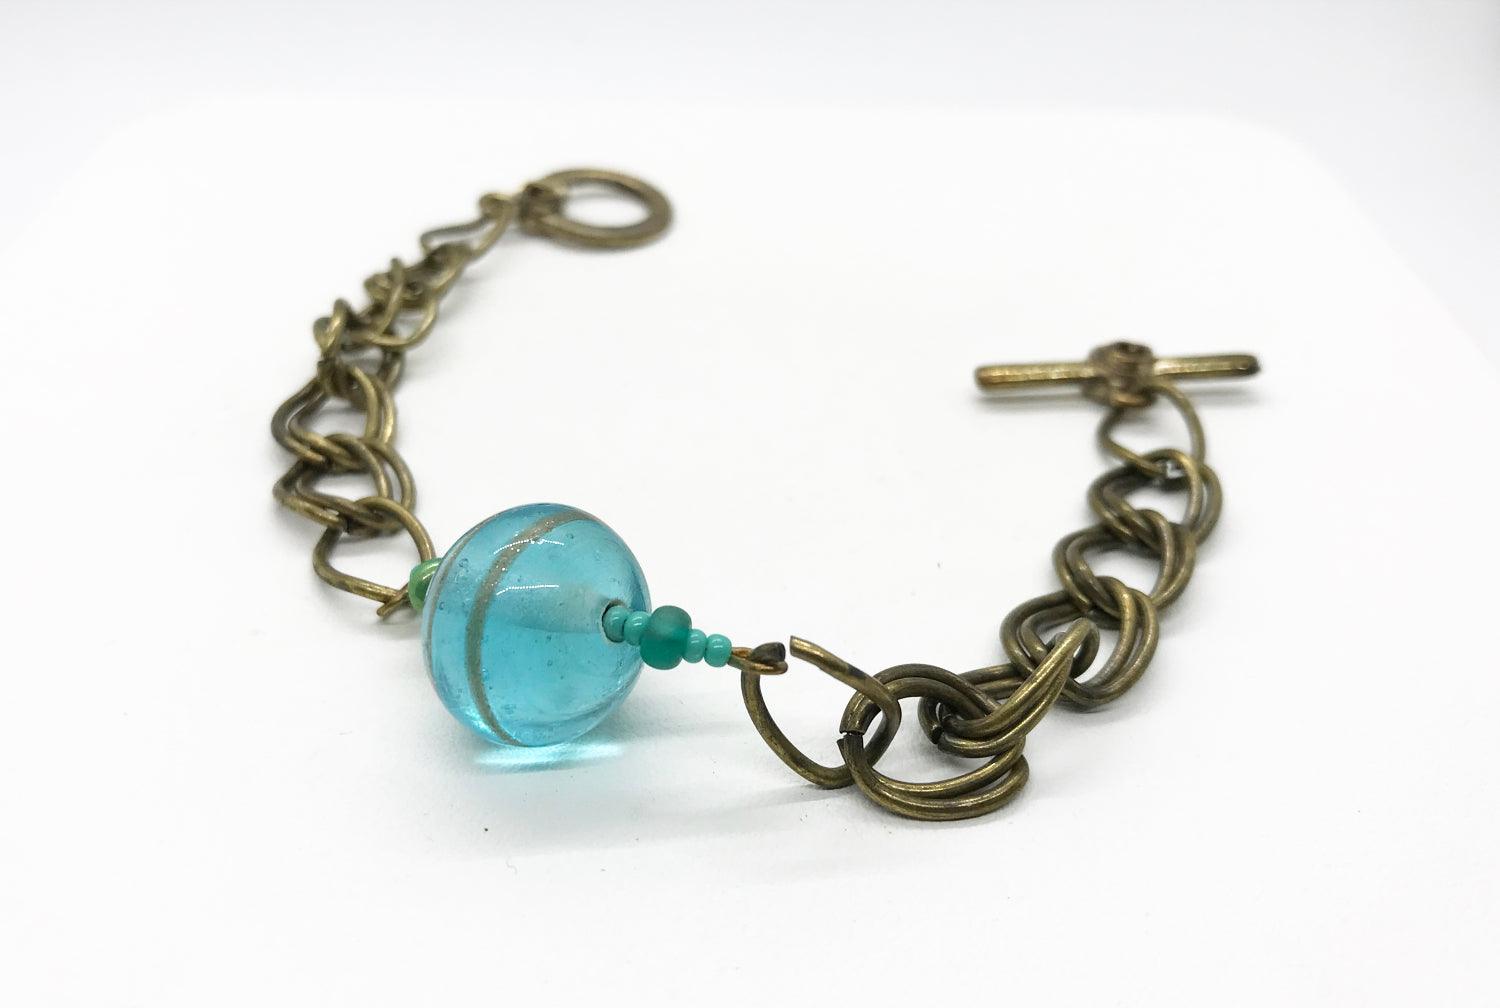 Unique Vintage Double Link Bracelet with Clear Aqua Blue Marble - Lamoree’s Vintage